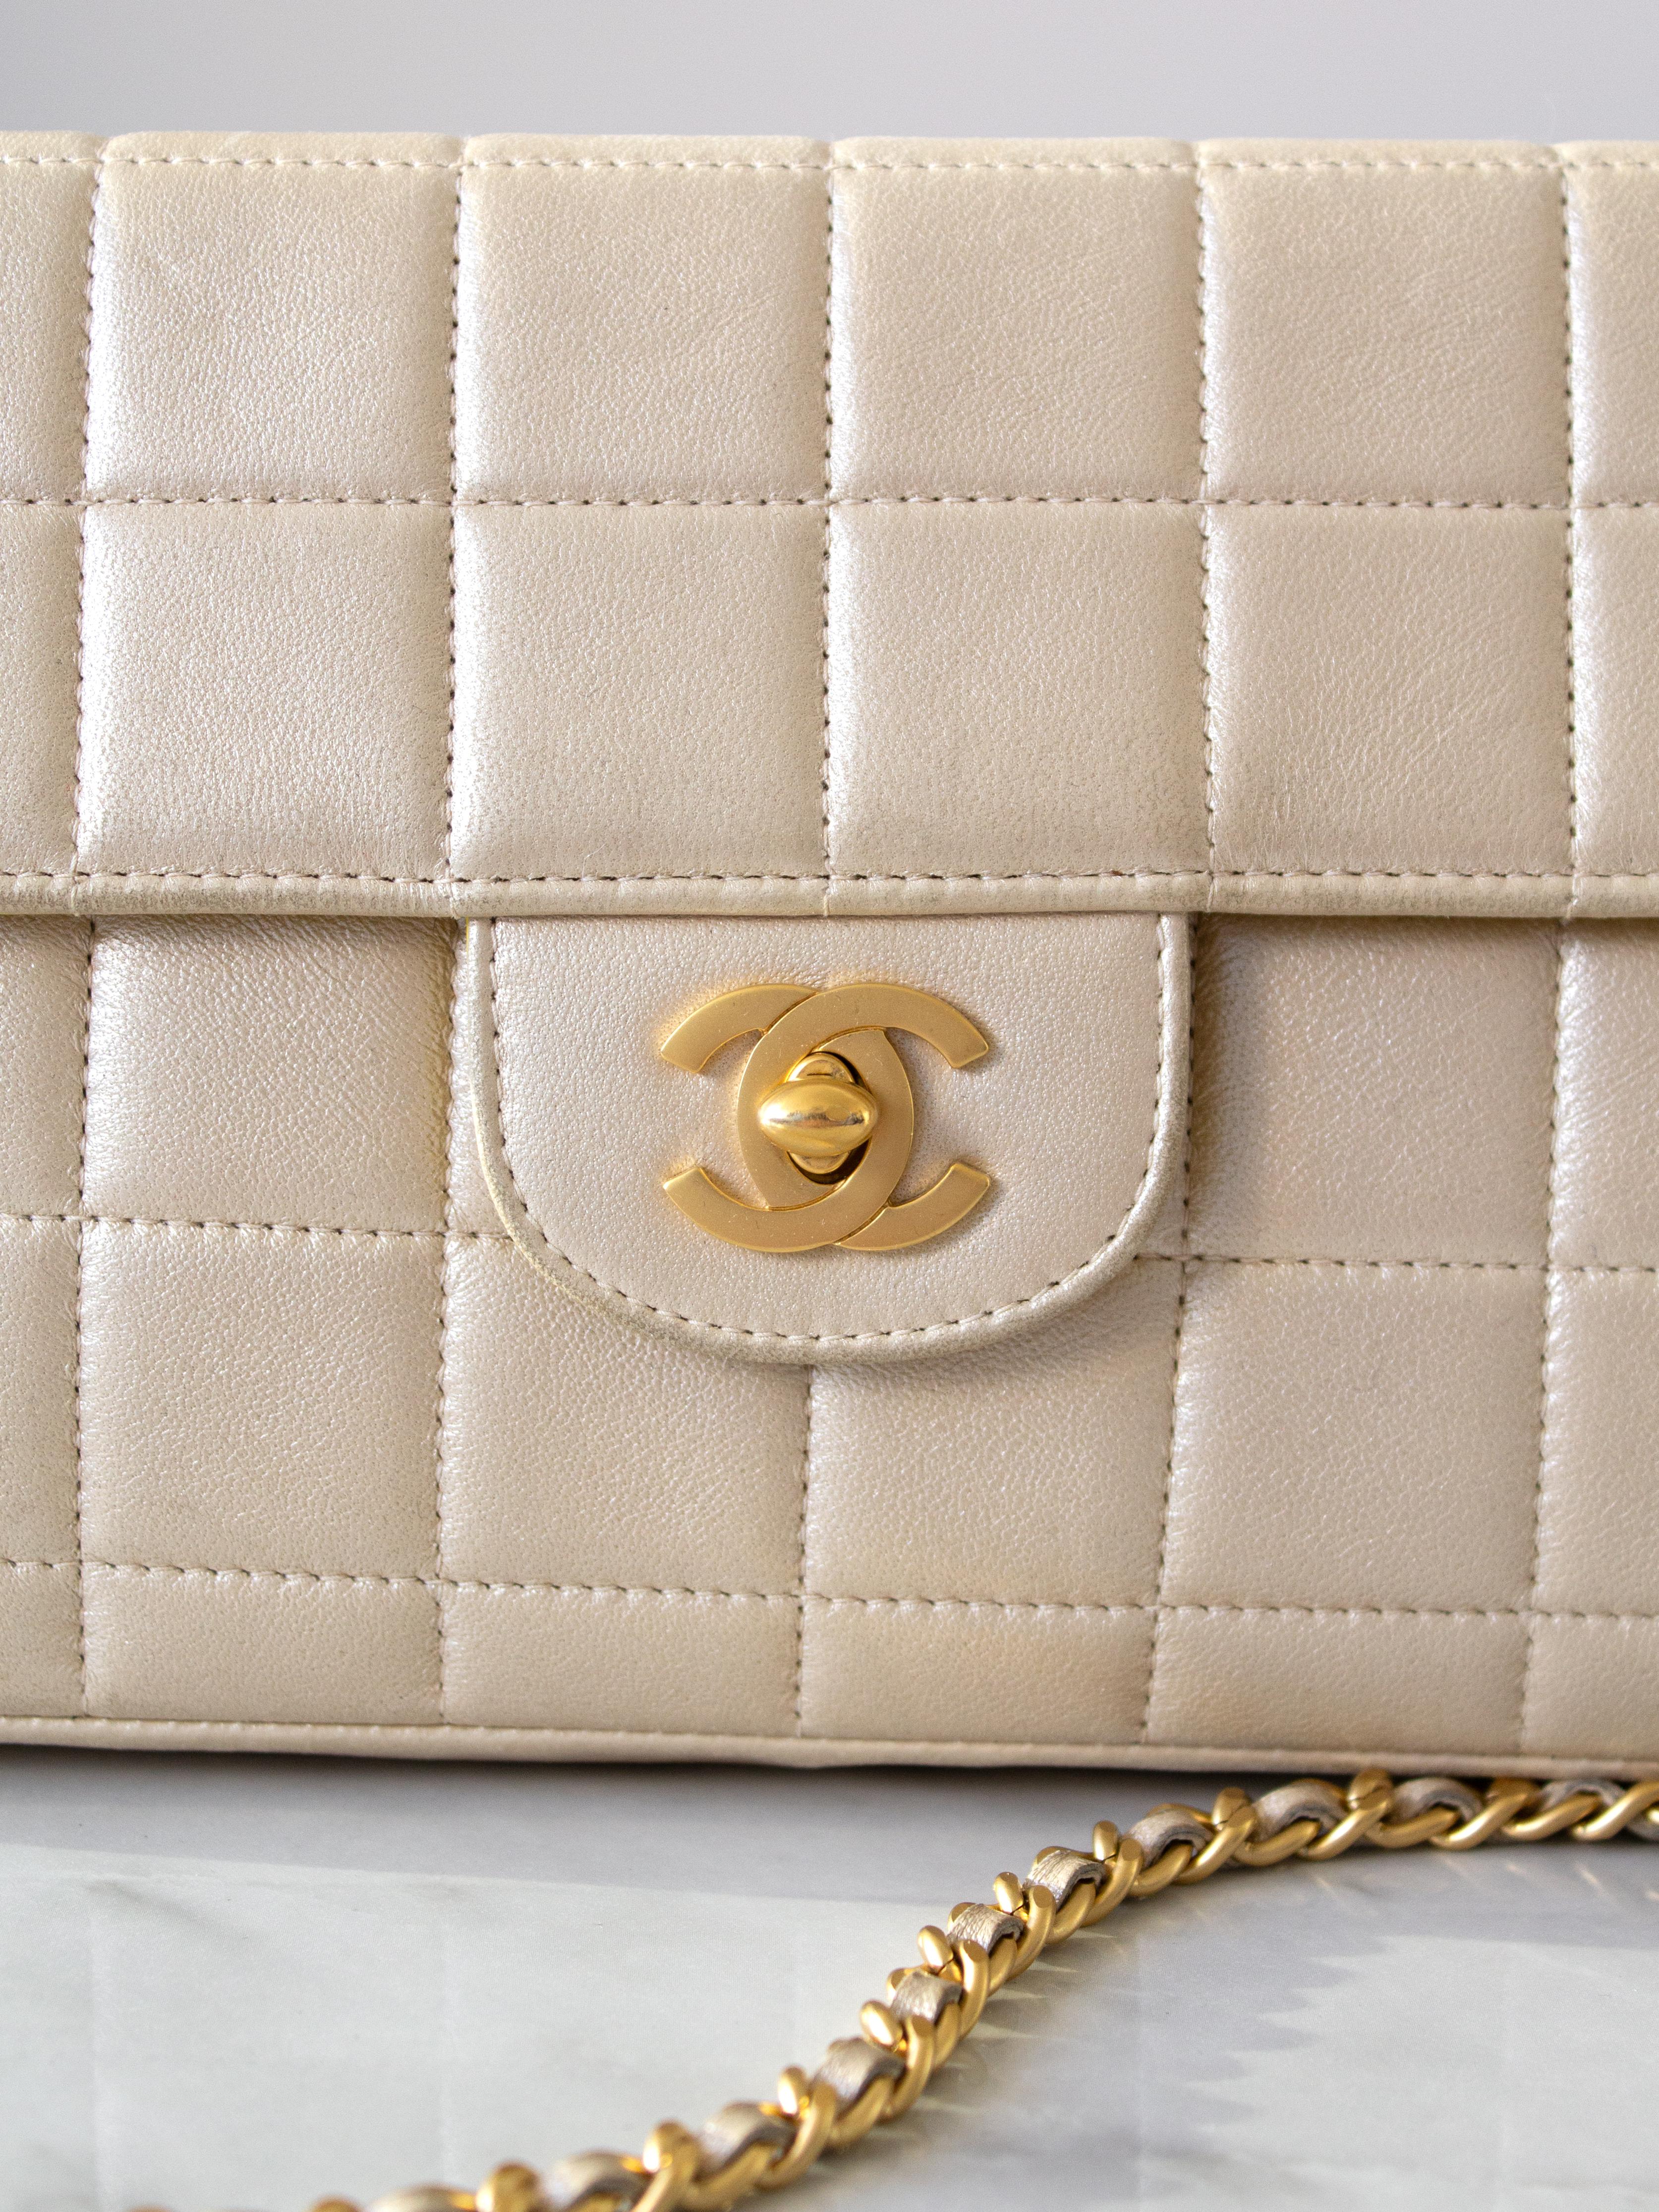 Adoptez les vibrations de l'Icone avec le sac emblématique East West de Chanel datant de 2002. Ce bijou à l'allure rétro affiche une silhouette baguette très tendance et le matelassage caractéristique des barres de chocolat. Confectionné dans un